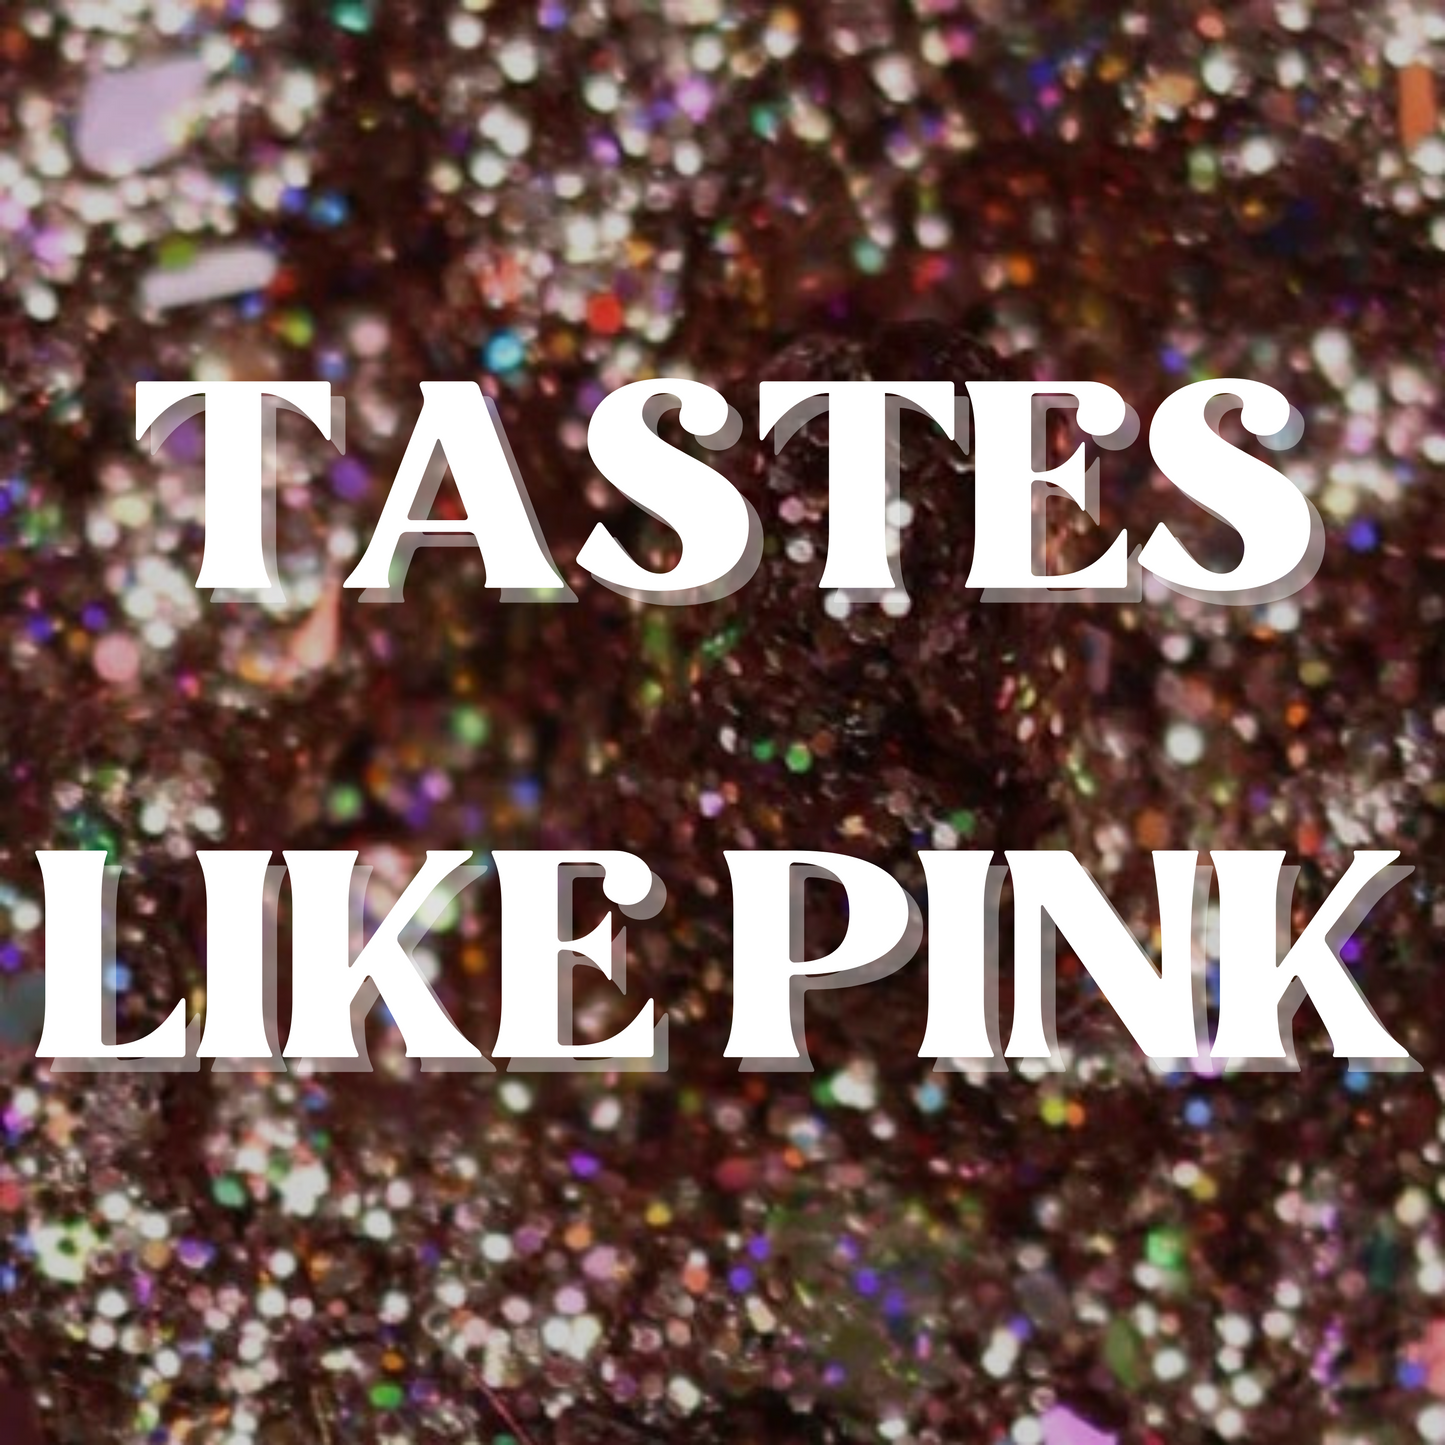 Tastes like pink bundle